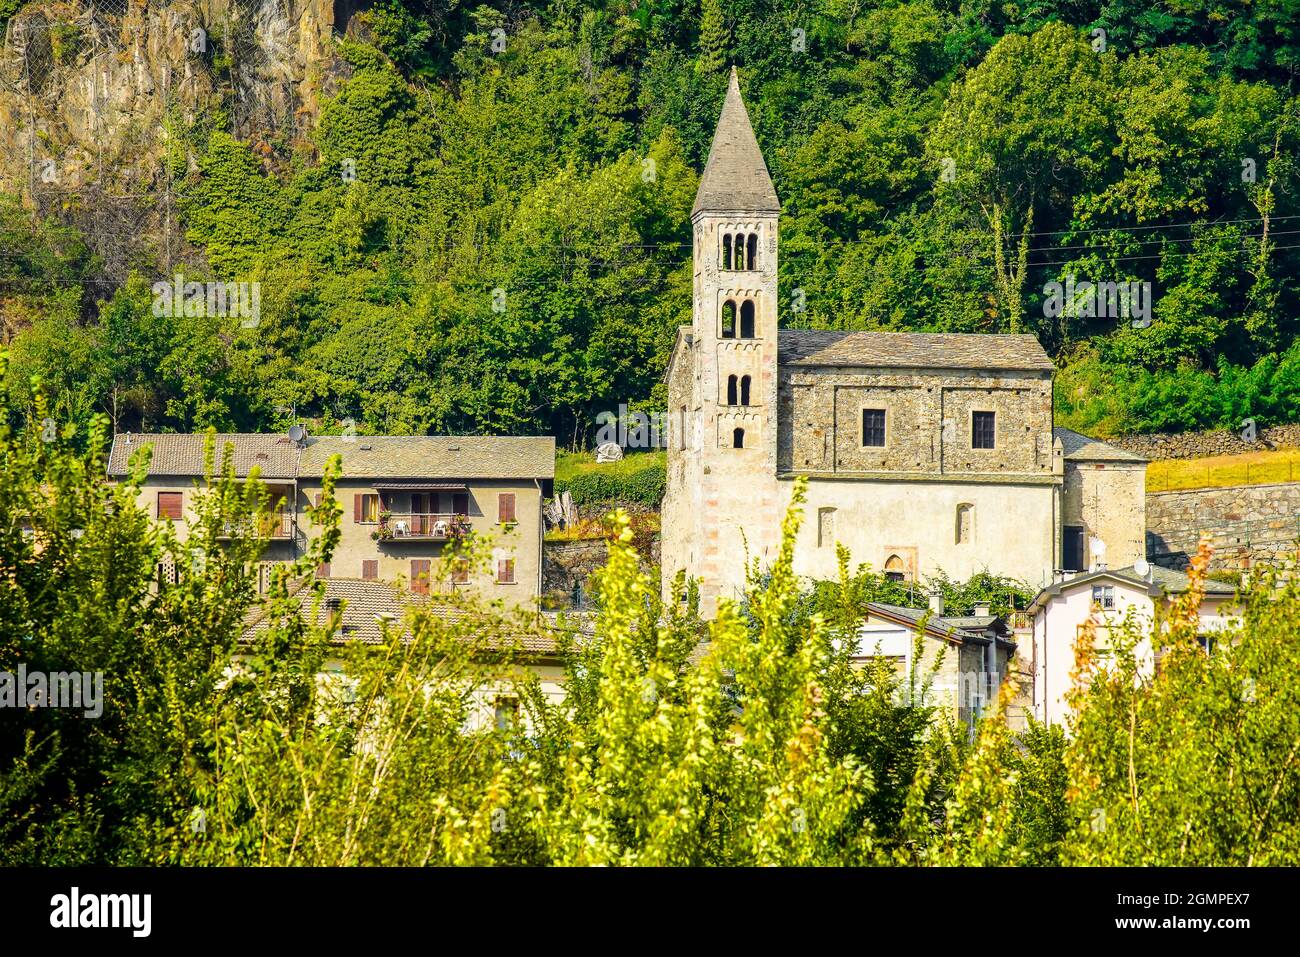 Church of Santa Marta in Sondalo village, Valtellina, Lombardy, Italy. Stock Photo